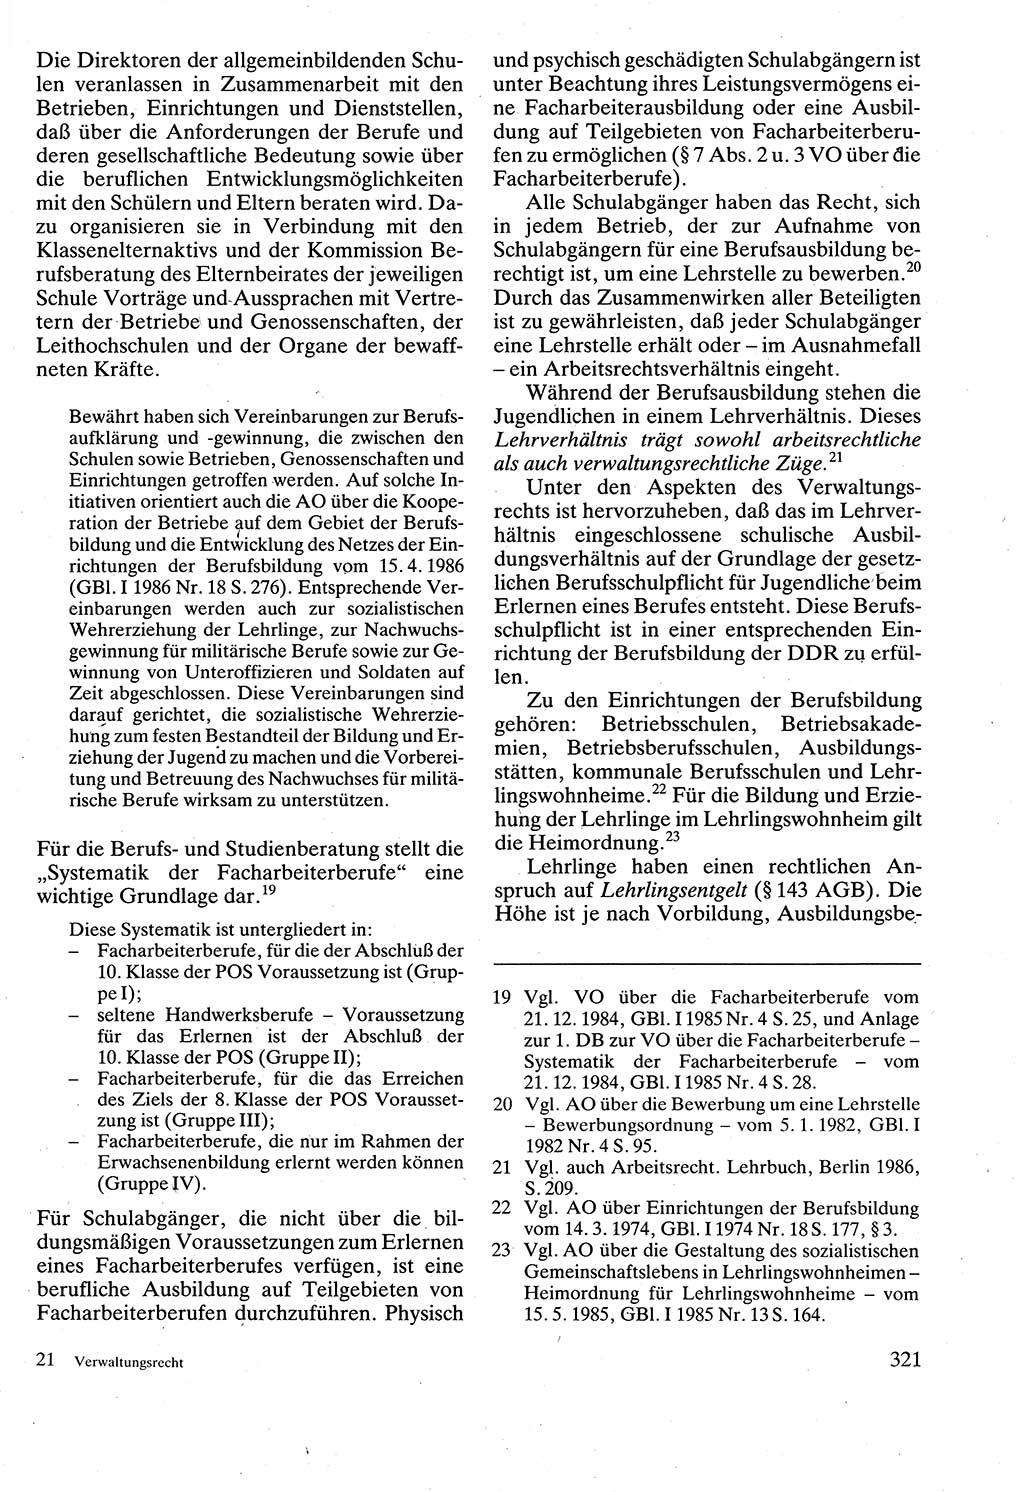 Verwaltungsrecht [Deutsche Demokratische Republik (DDR)], Lehrbuch 1988, Seite 321 (Verw.-R. DDR Lb. 1988, S. 321)